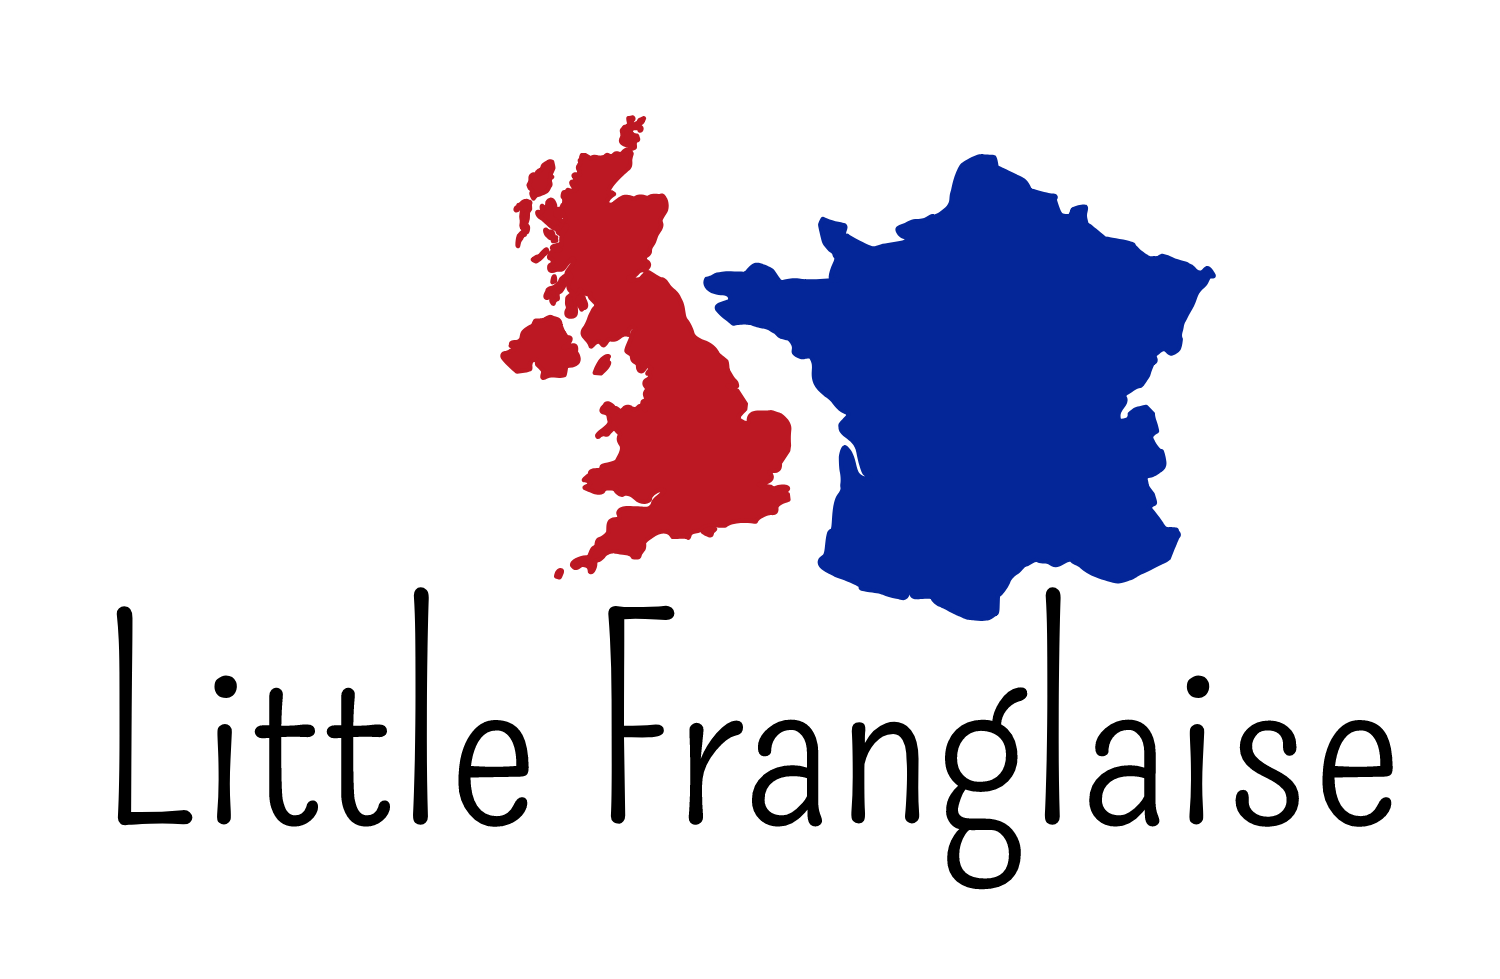 Little Franglaise